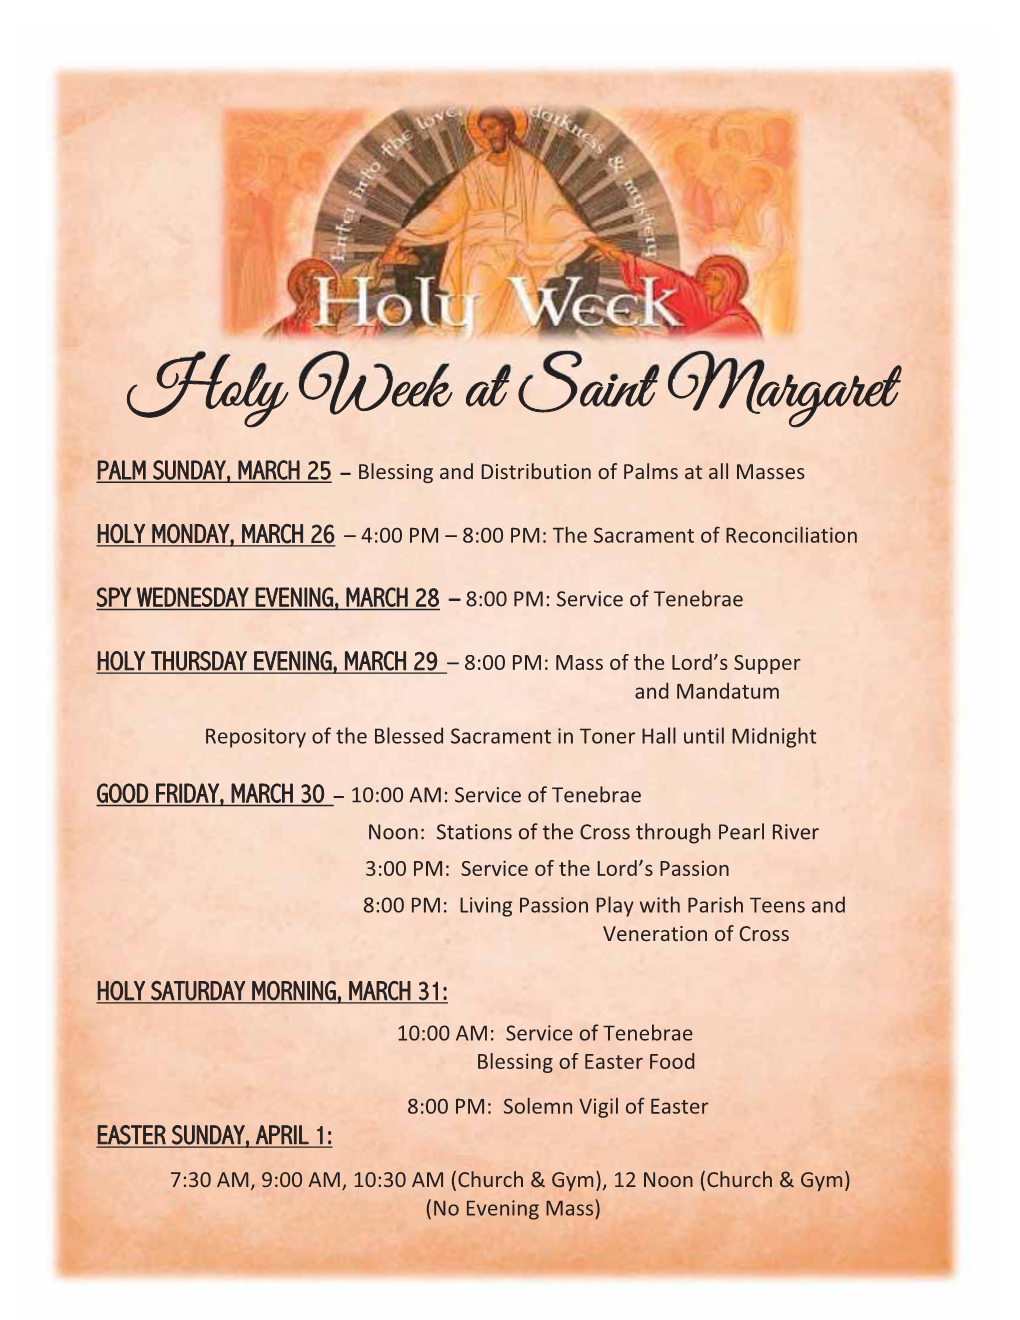 Holy Week at Saint Margaret